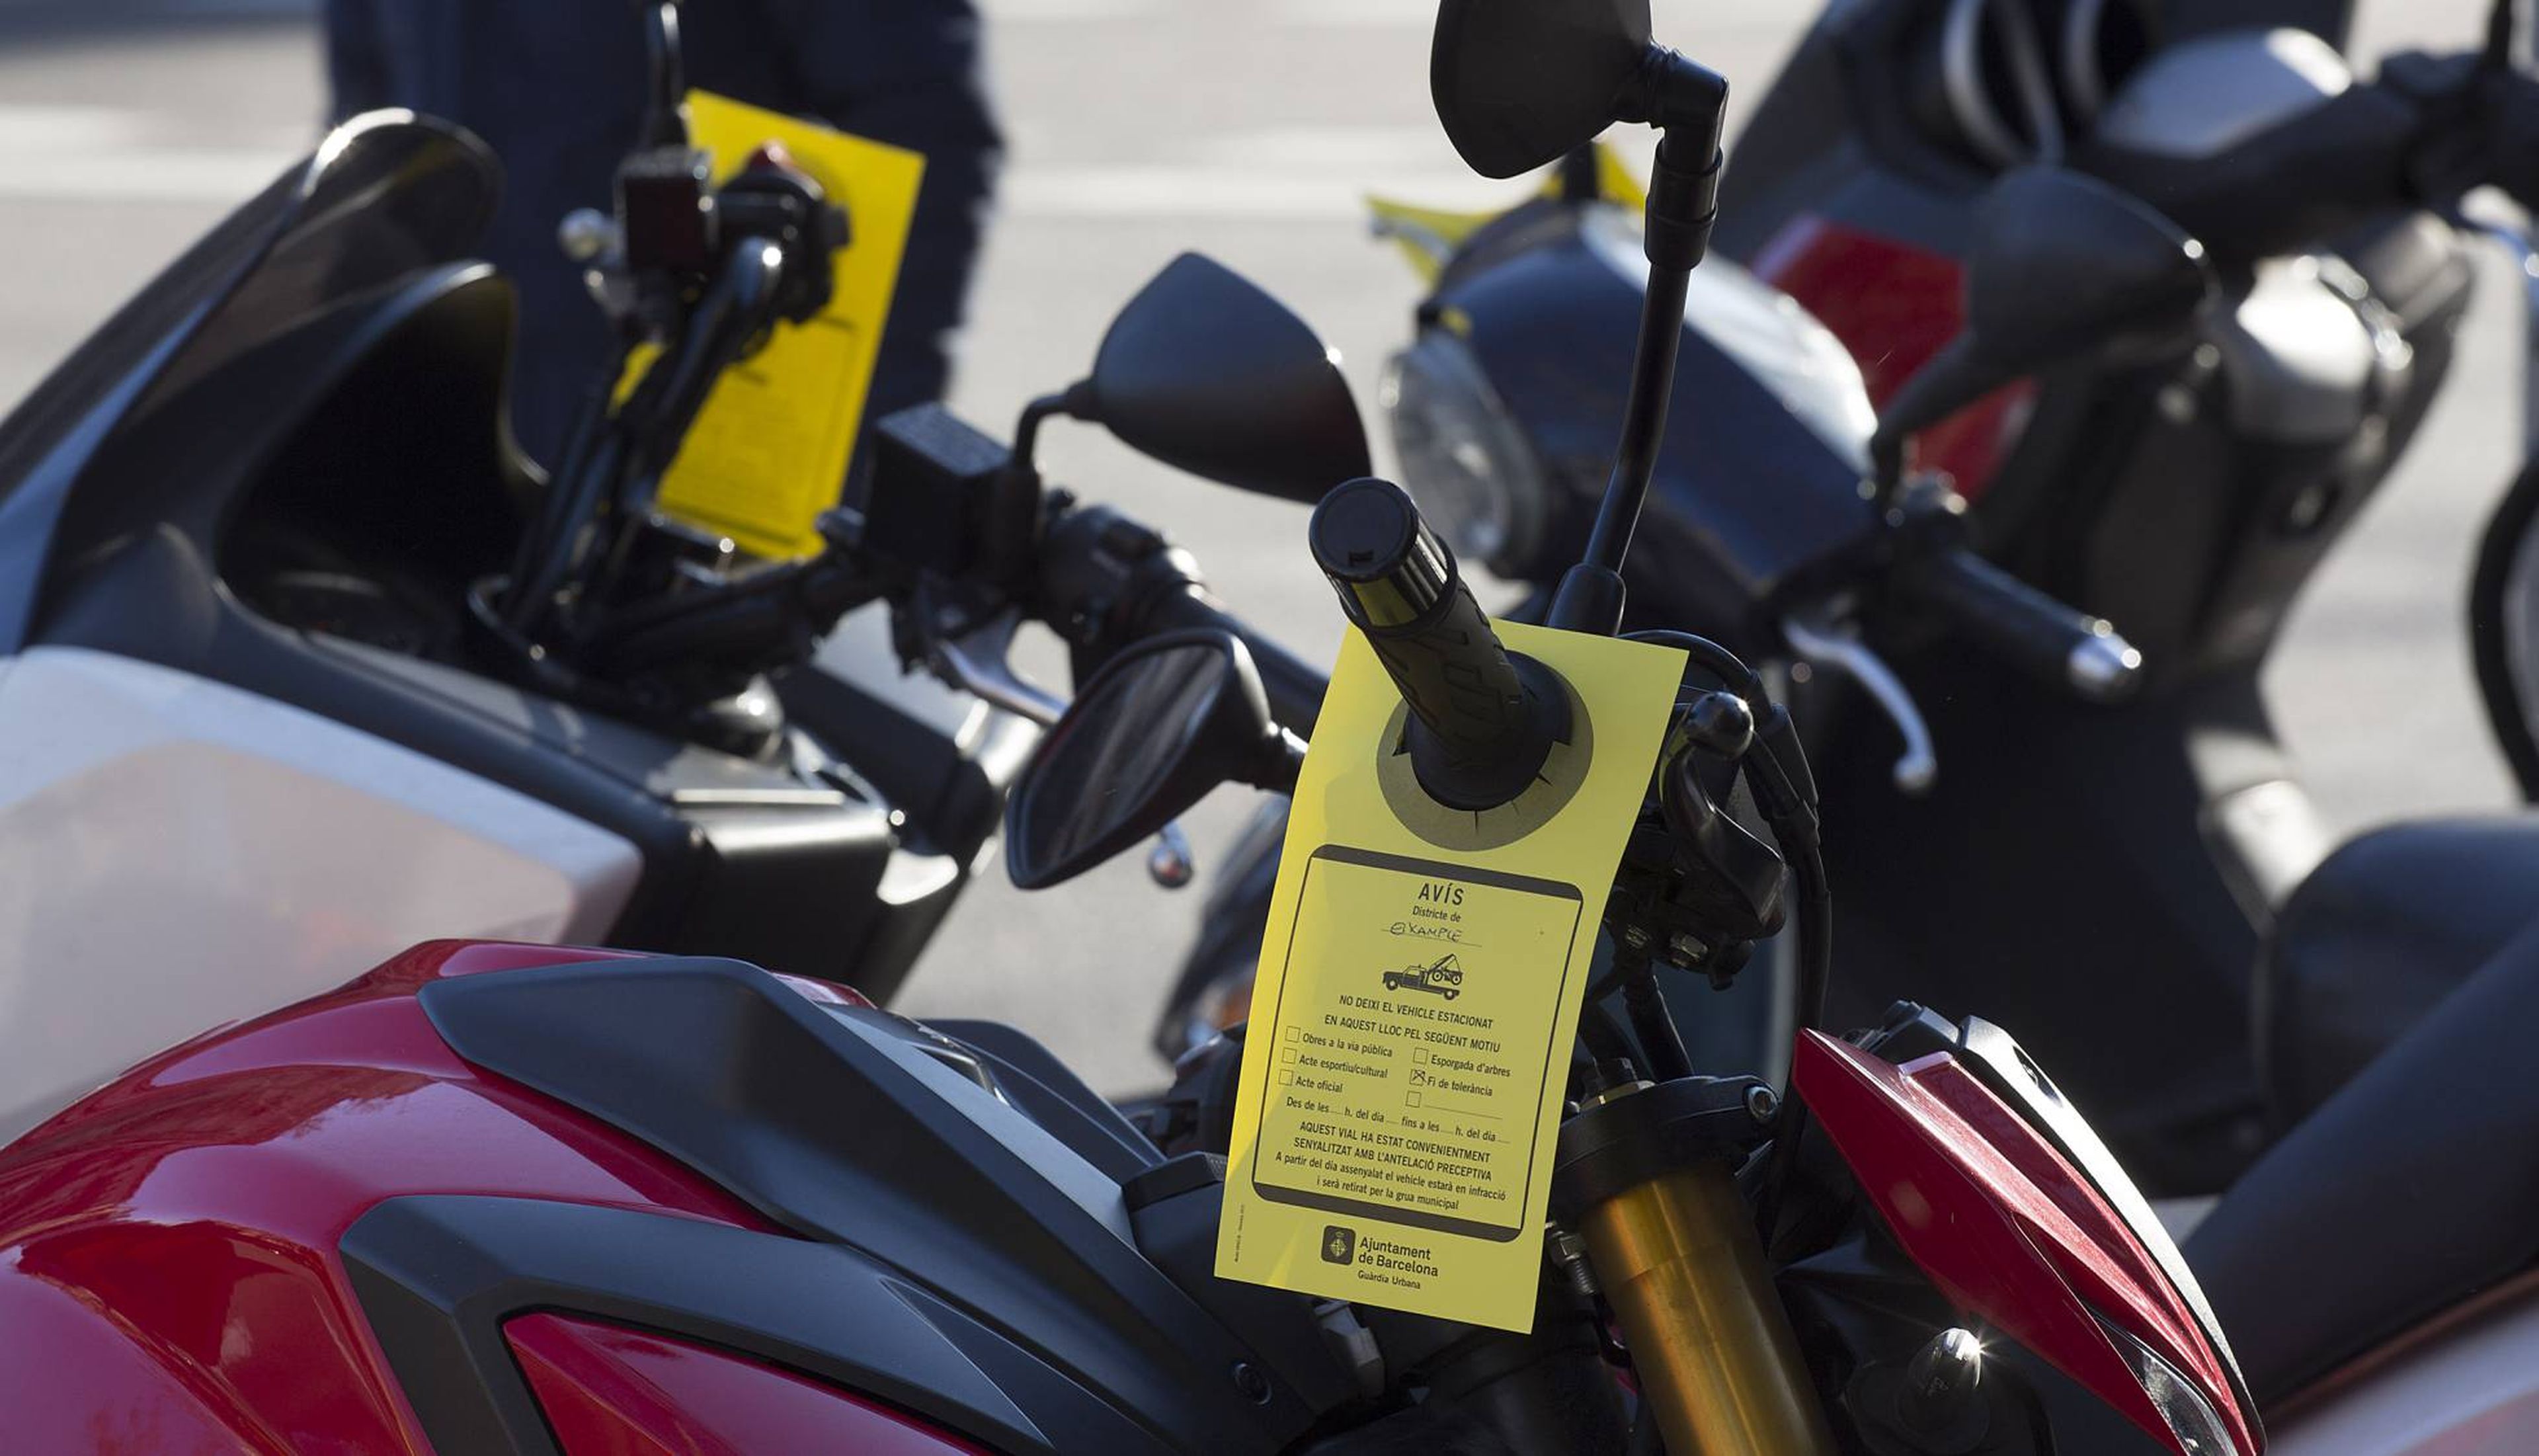 Las motos mal aparcadas en Barcelona corren peligro